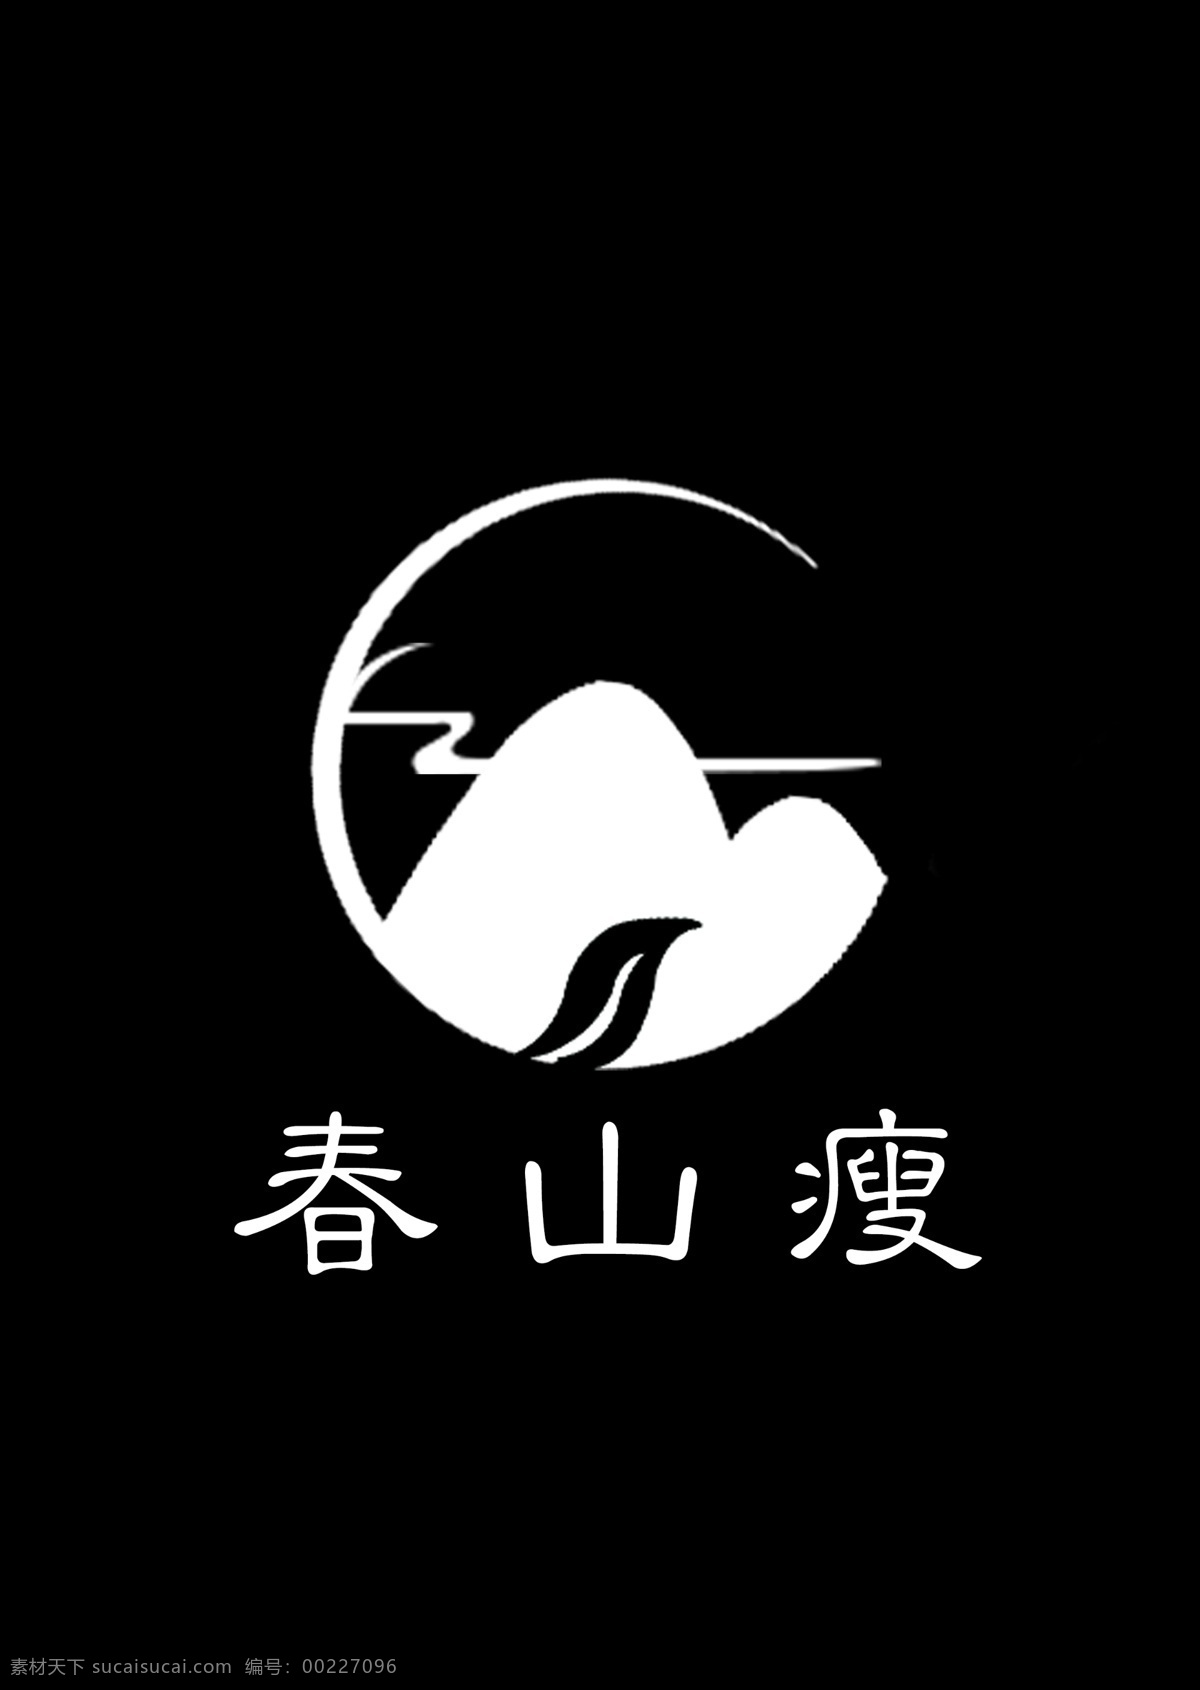 春山 瘦 花茶 logo 茶叶 茶 花茶logo